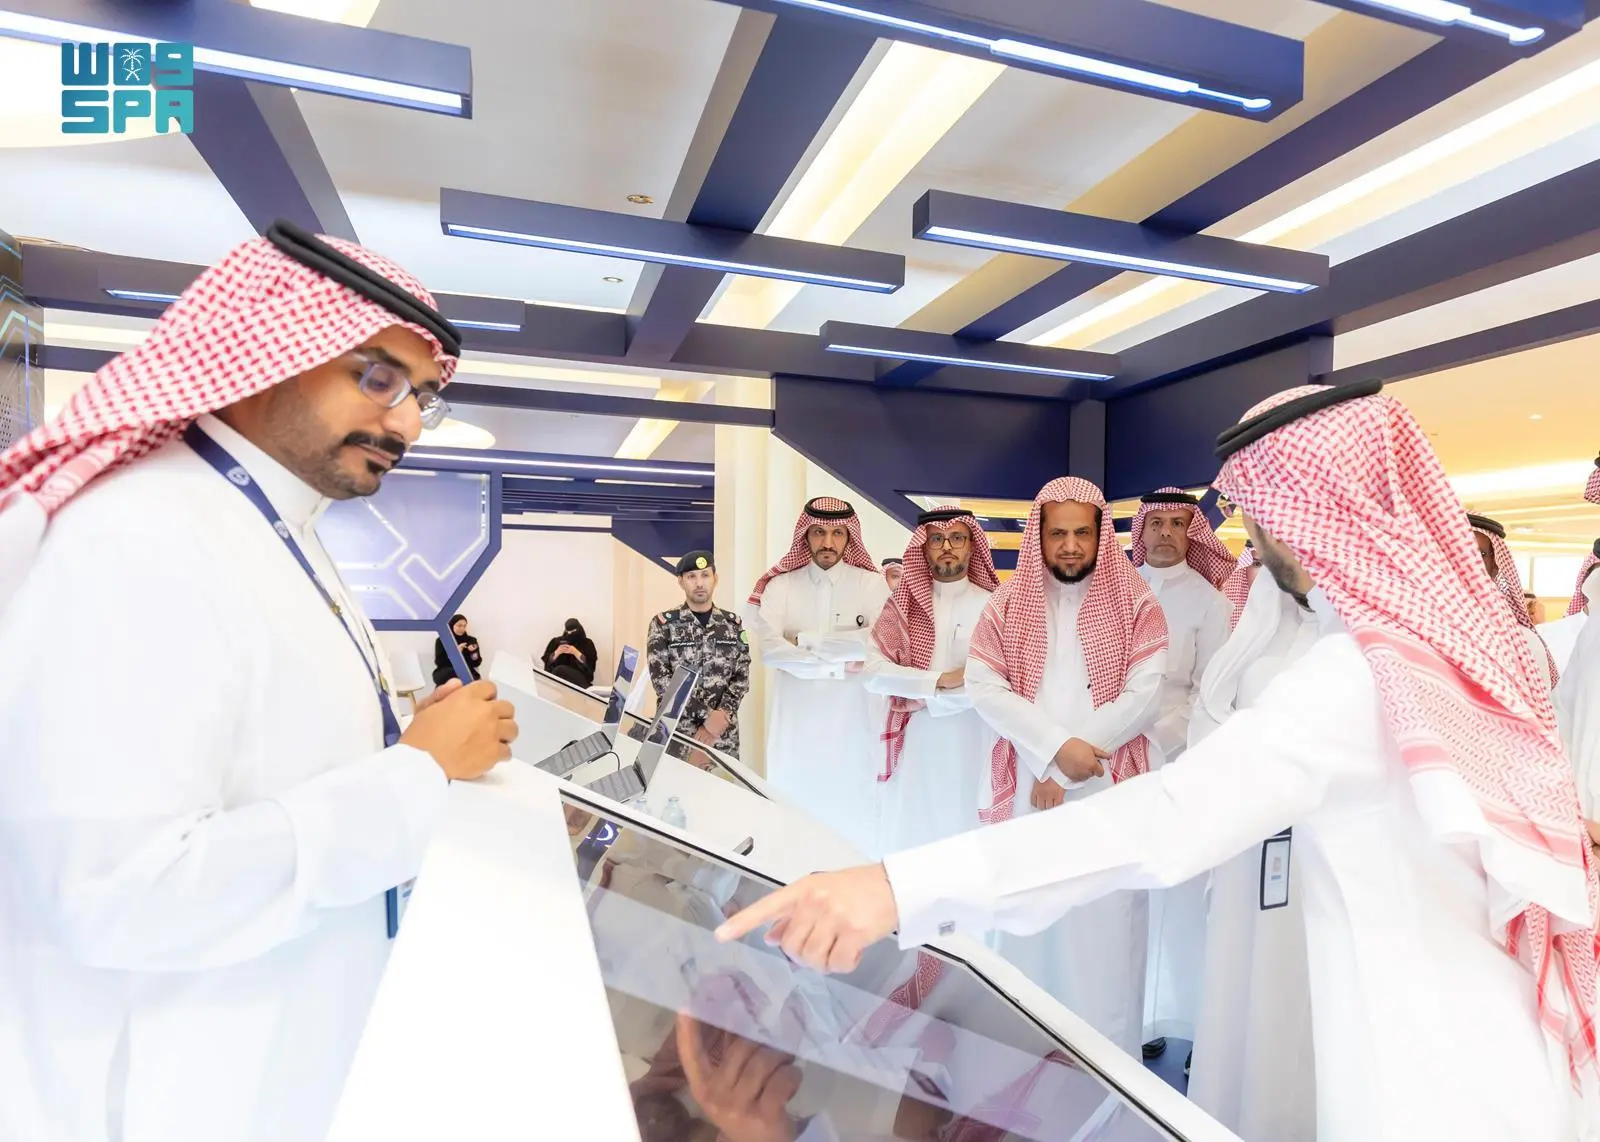 النائب العام يفتتح المعرض المتنقل للتوعية بالأمن السيبراني في الرياض